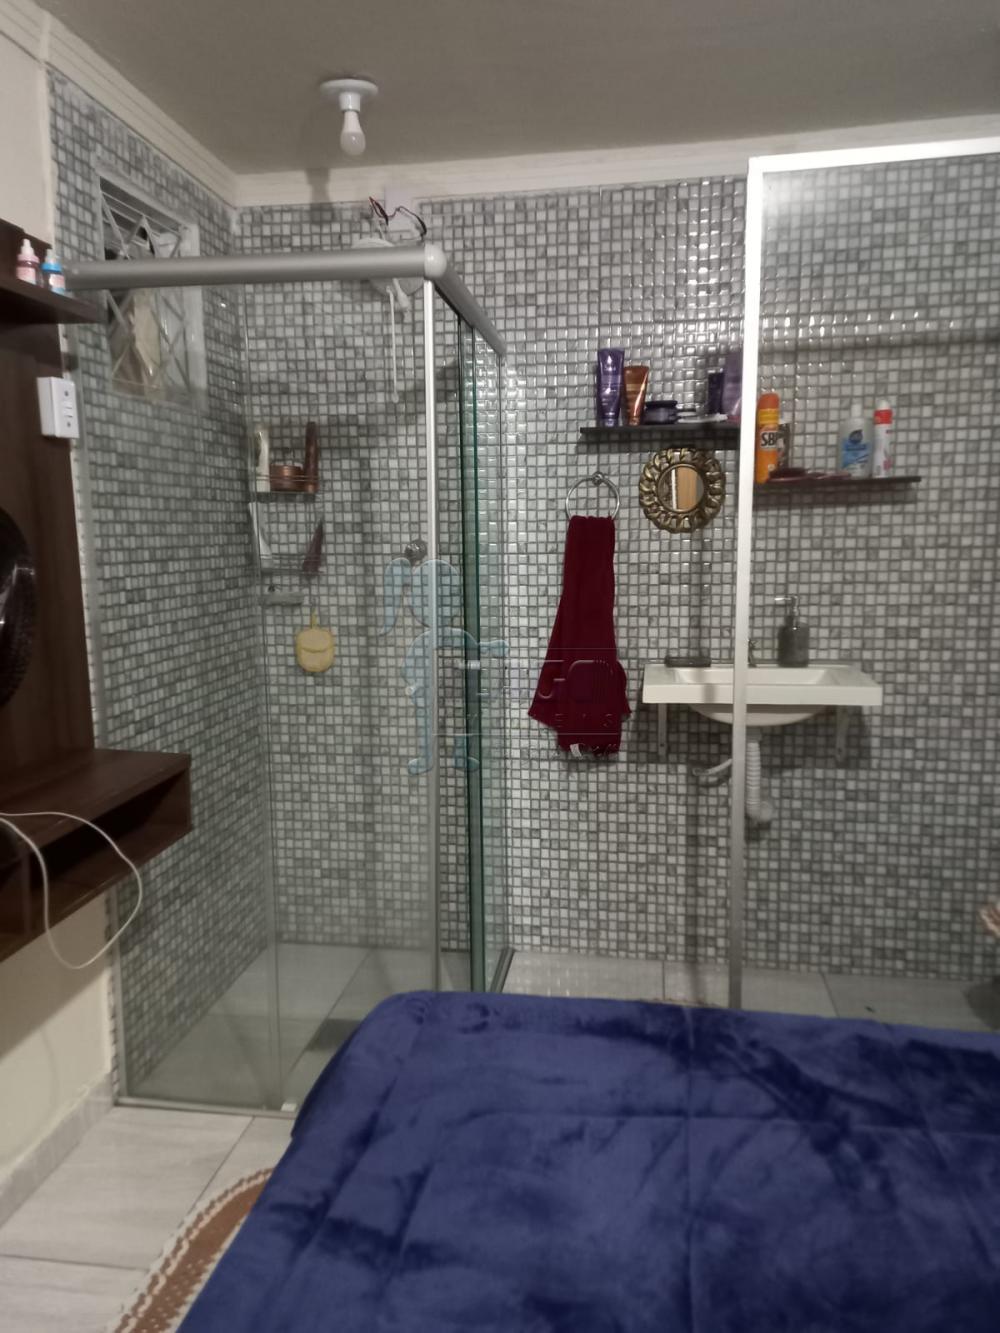 Comprar Casas / Padrão em Ribeirão Preto R$ 250.000,00 - Foto 7